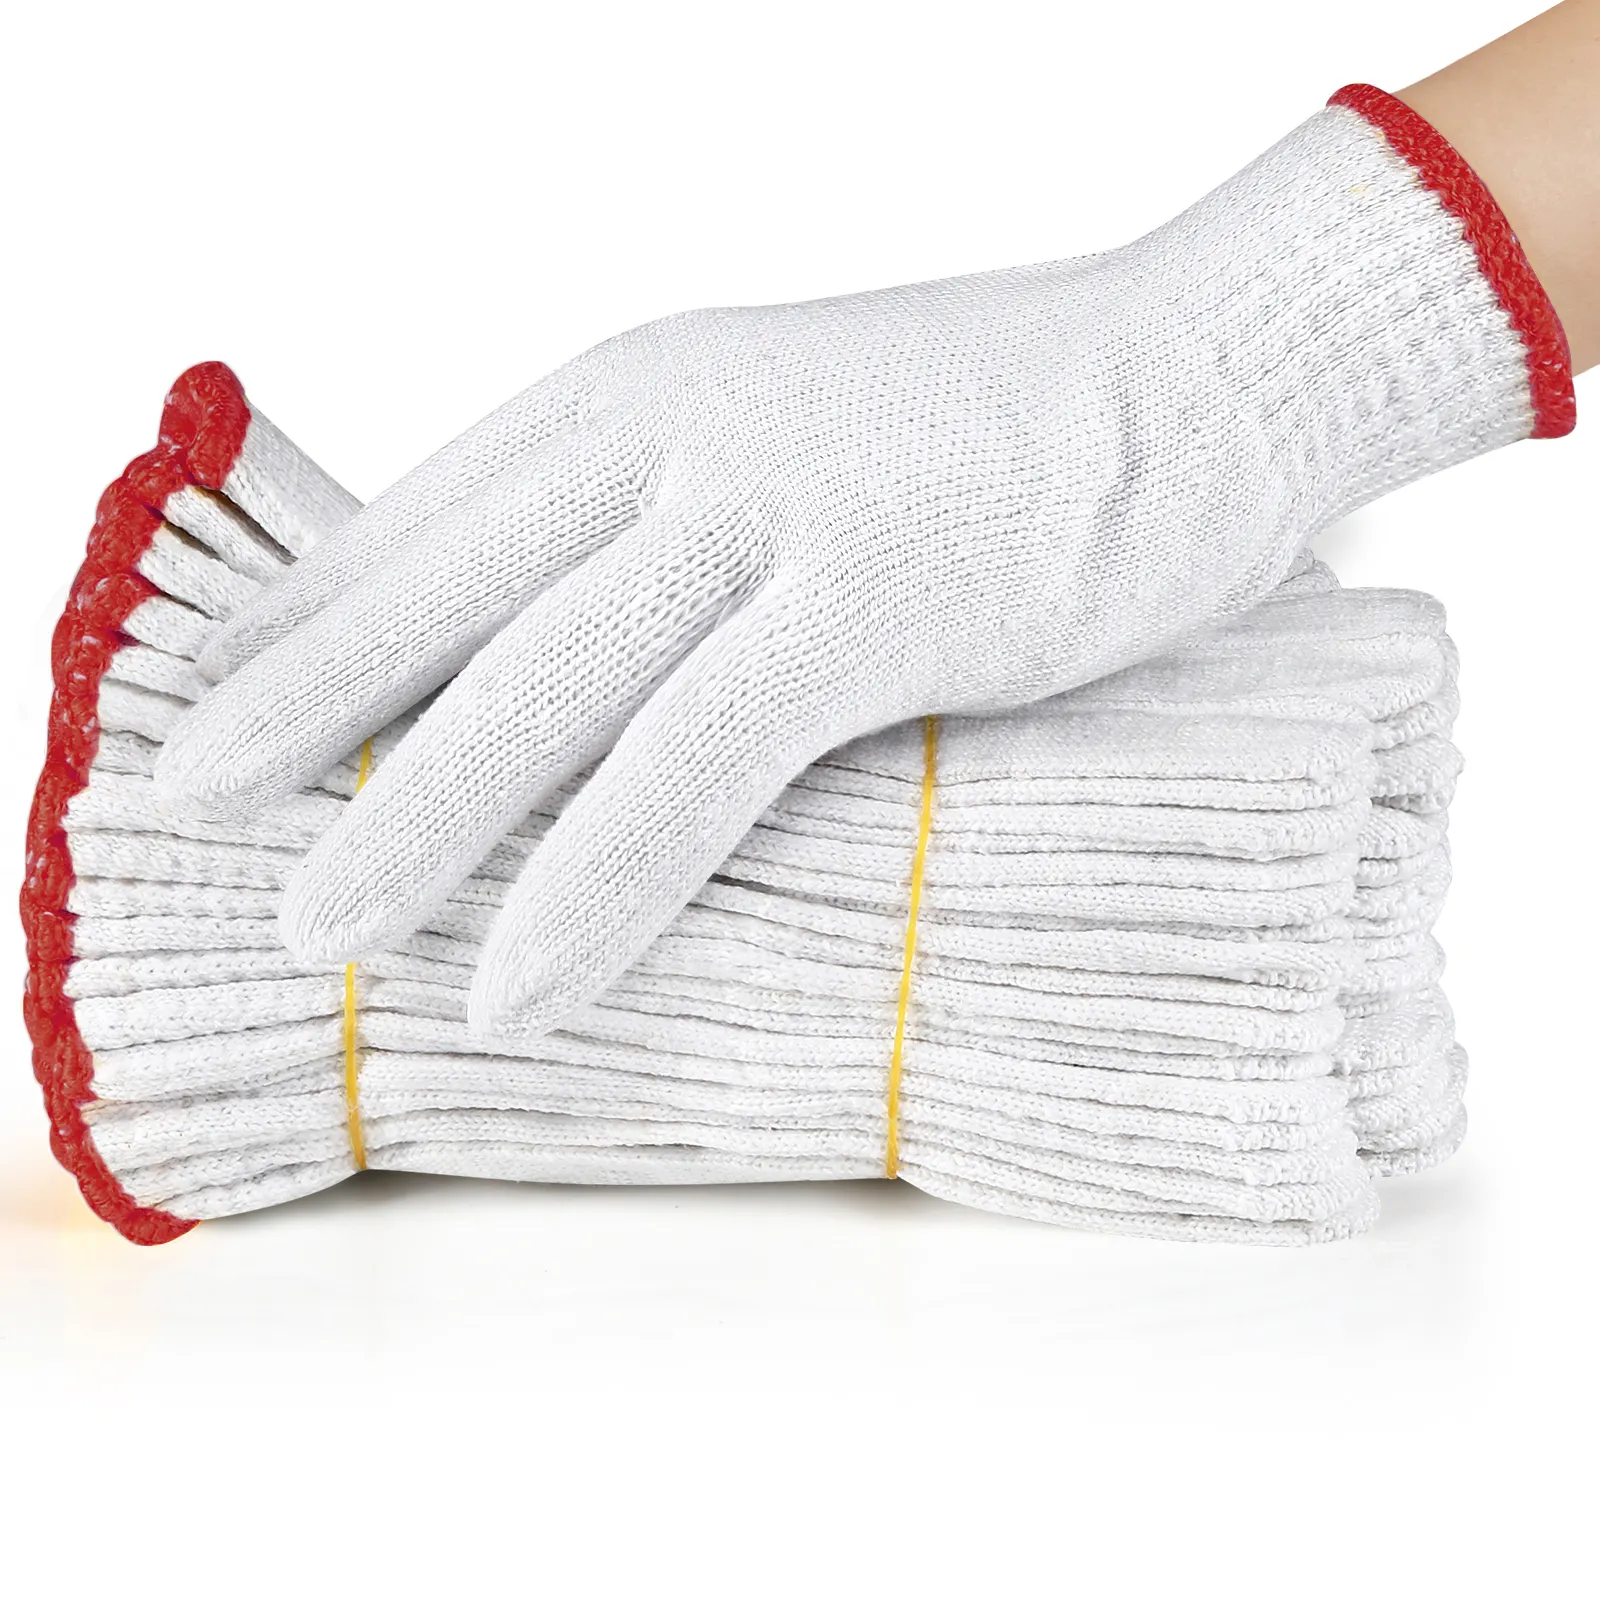 Оптовая продажа из Китая, 30-60 г/пар, белые хлопковые трикотажные перчатки для рук, защитные рабочие перчатки